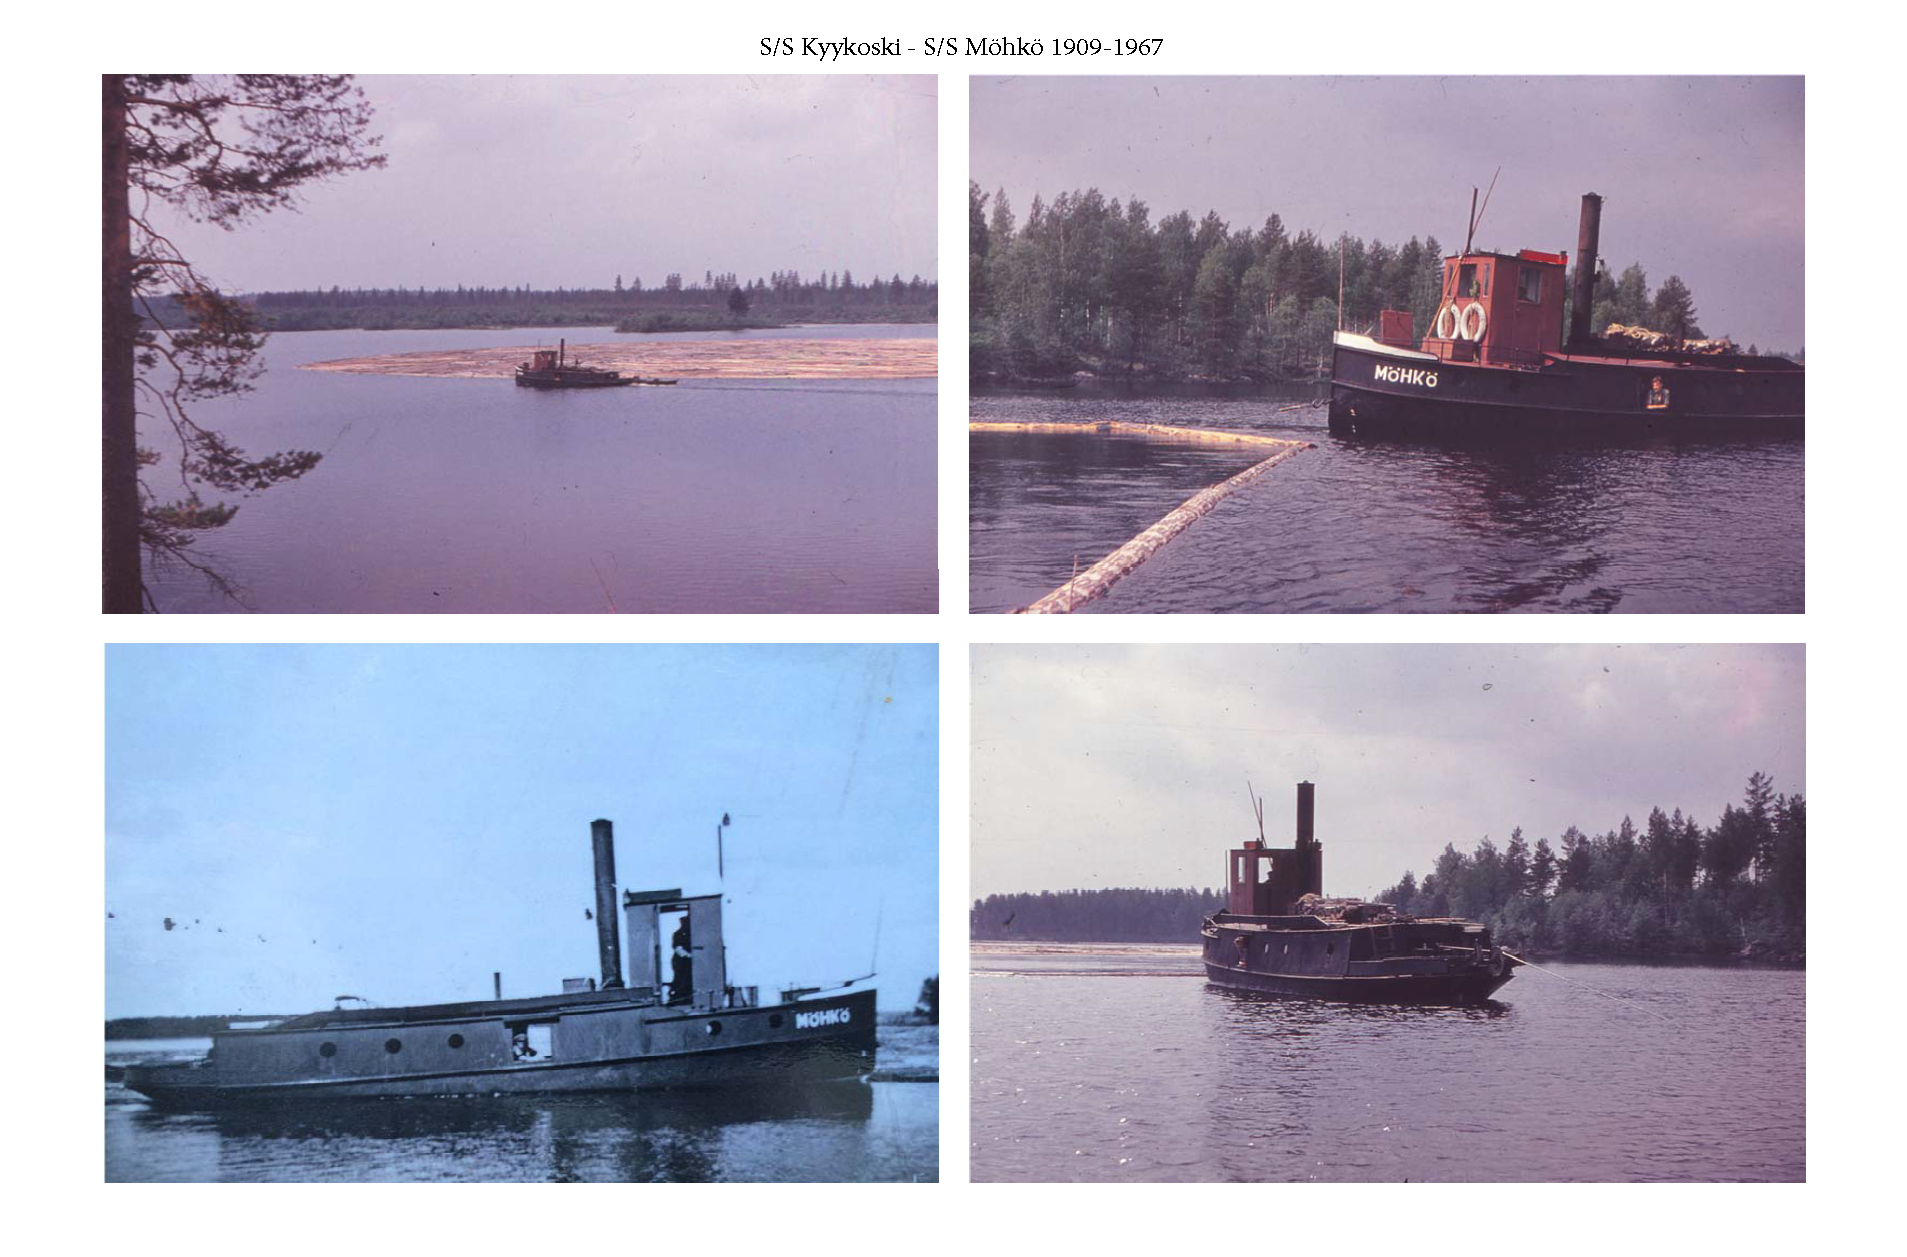 Möhkö_1909-1967